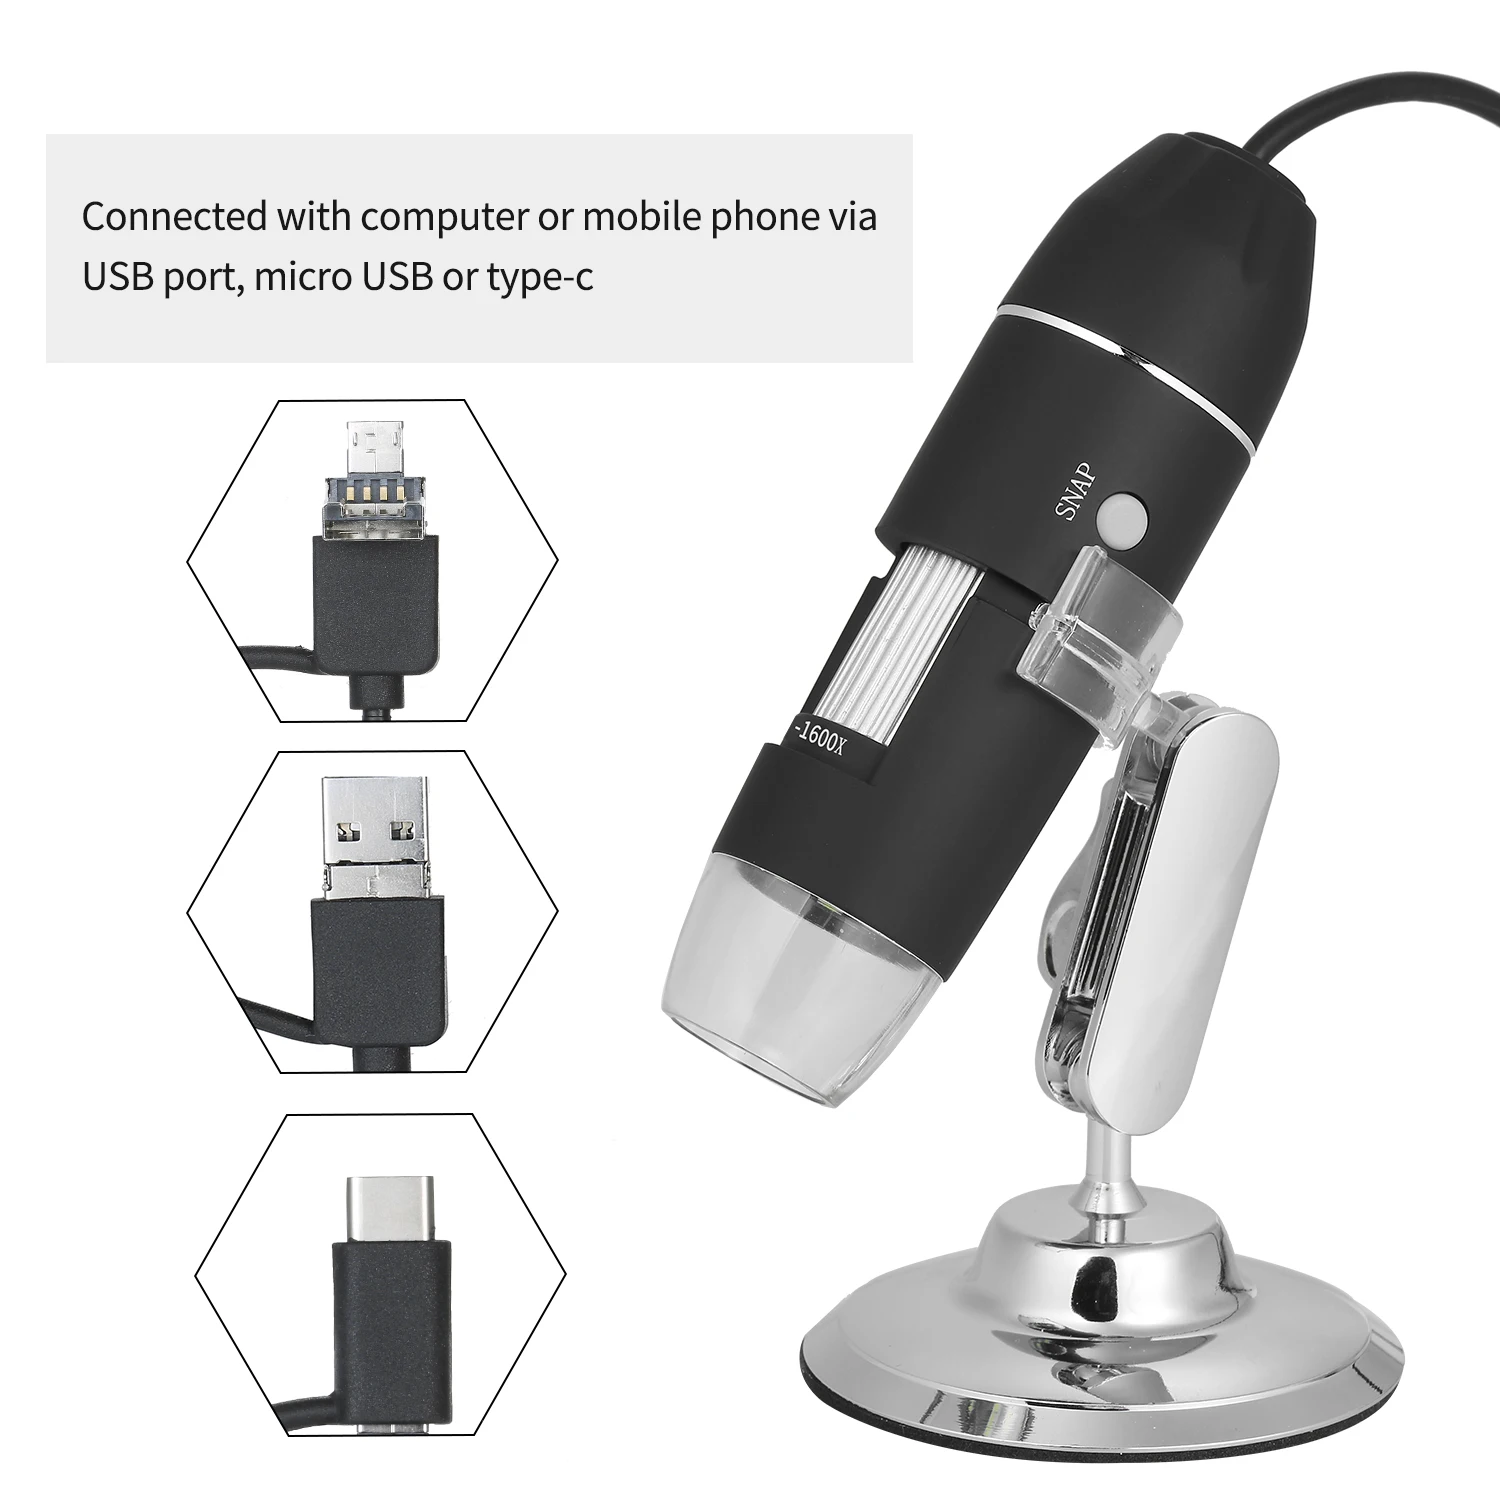 USB цифровой зум микроскоп Лупа с функцией OTG 8-светодиодный светильник увеличительное стекло 1600X увеличение микроскоп с подставкой